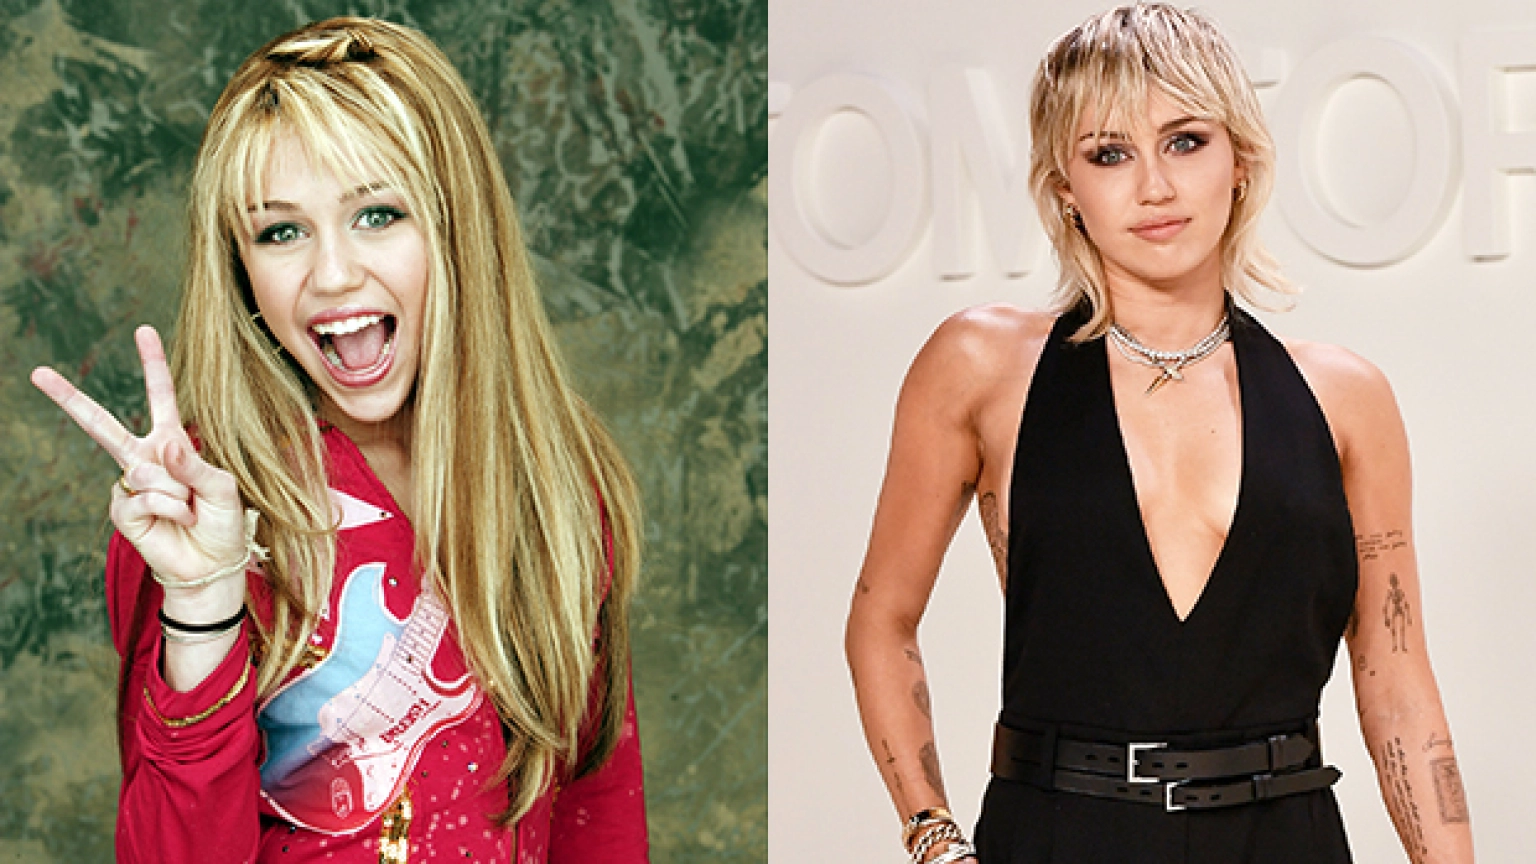 麦莉·赛勒斯 (Miley Cyrus) 饰演汉娜·蒙塔娜 (Hannah Montana)，戴着长长的金色假发，微笑着张开嘴巴，做出和平手势。麦莉·赛勒斯 (Miley Cyrus) 现在留着铂金金色短发，身穿低胸黑色上衣，炫耀她的纹身。